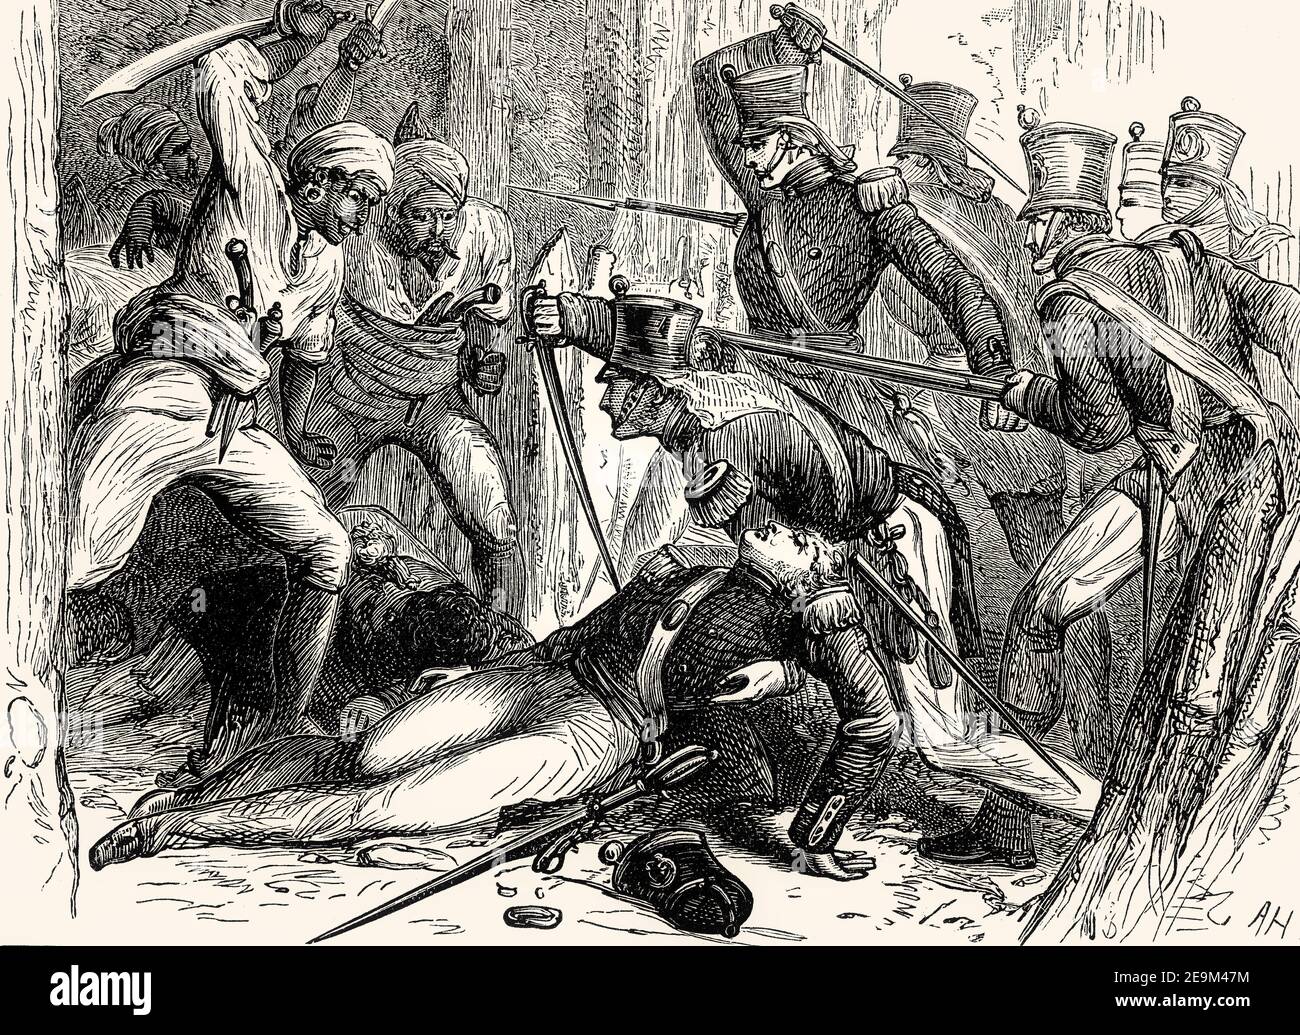 Rettung von Oberstleutnant Macgregor Murray, Schlacht von Talneir, 3. Anglo-Maratha-Krieg, Indien, 1818, vor britischen Schlachten auf Land und Meer, von James Grant Stockfoto